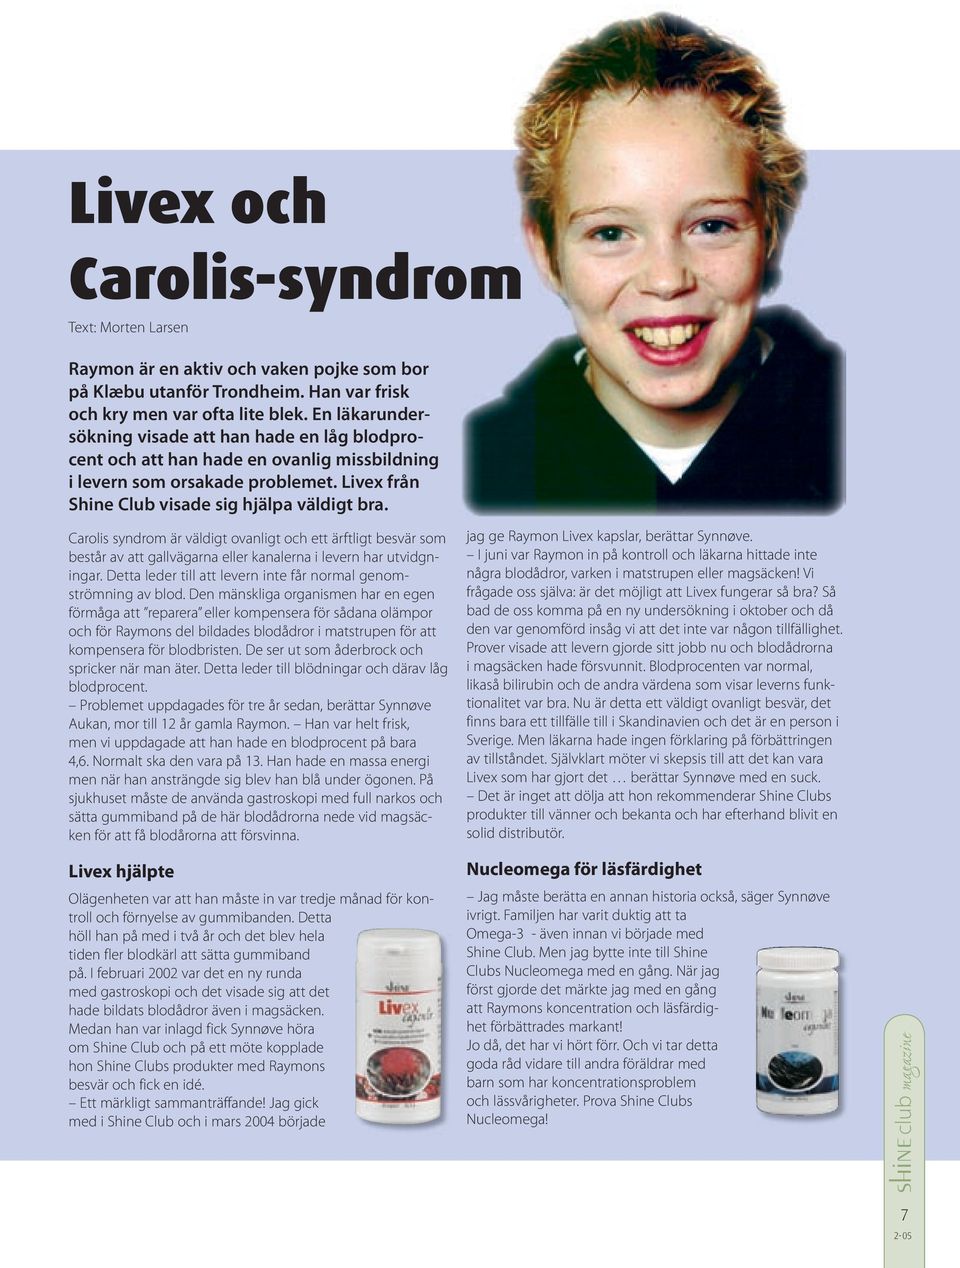 Carolis syndrom är väldigt ovanligt och ett ärftligt besvär som består av att gallvägarna eller kanalerna i levern har utvidgningar. Detta leder till att levern inte får normal genomströmning av blod.